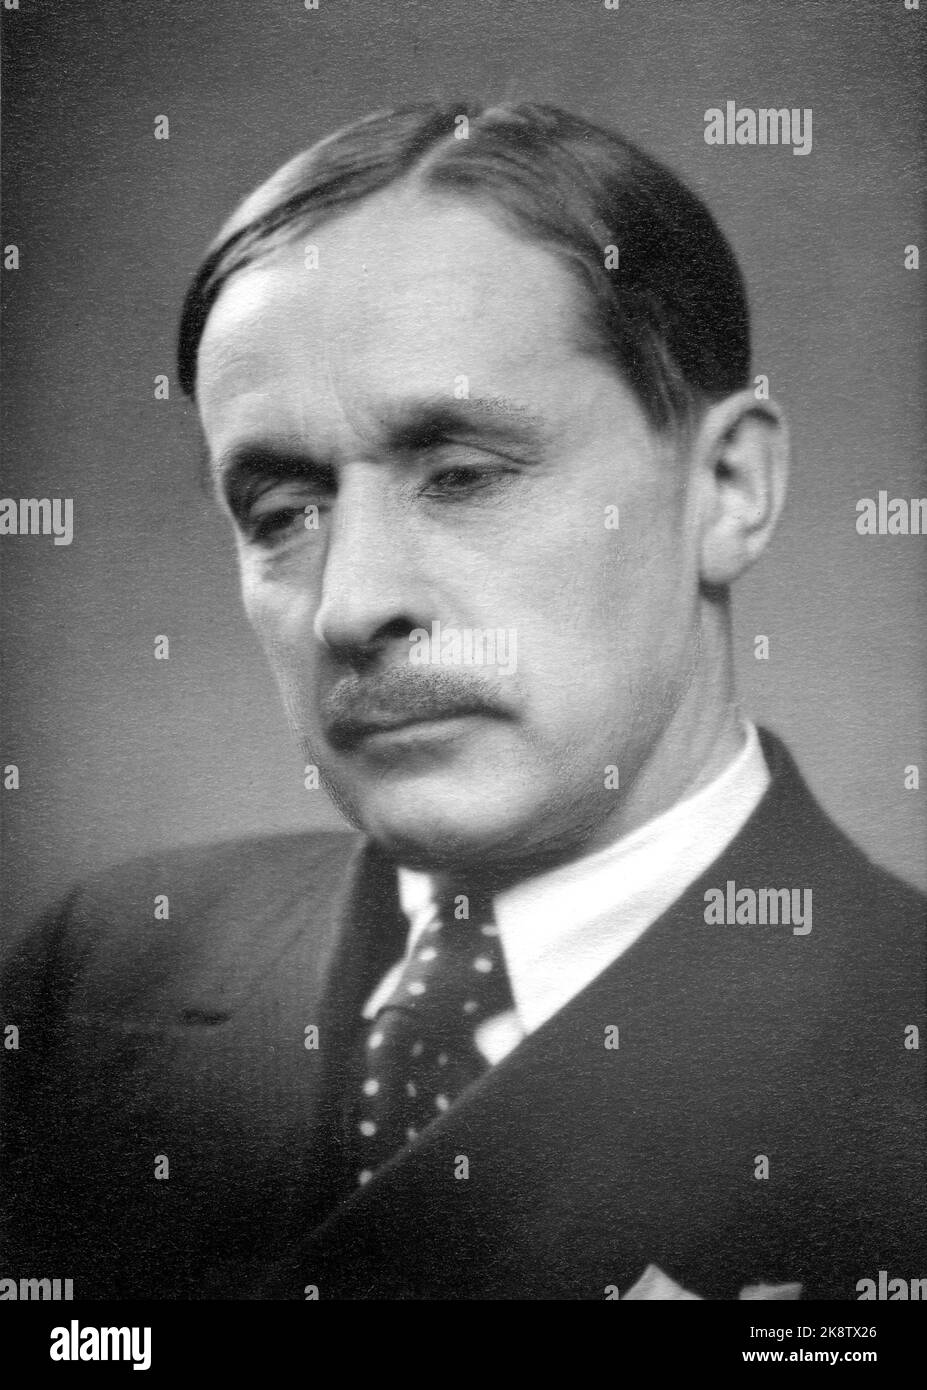 Non datato, circa 1940-45. Regista Søren Onsager, ritratto. Modelli, professore e direttore della Galleria Nazionale. Foto: NTB Foto Stock